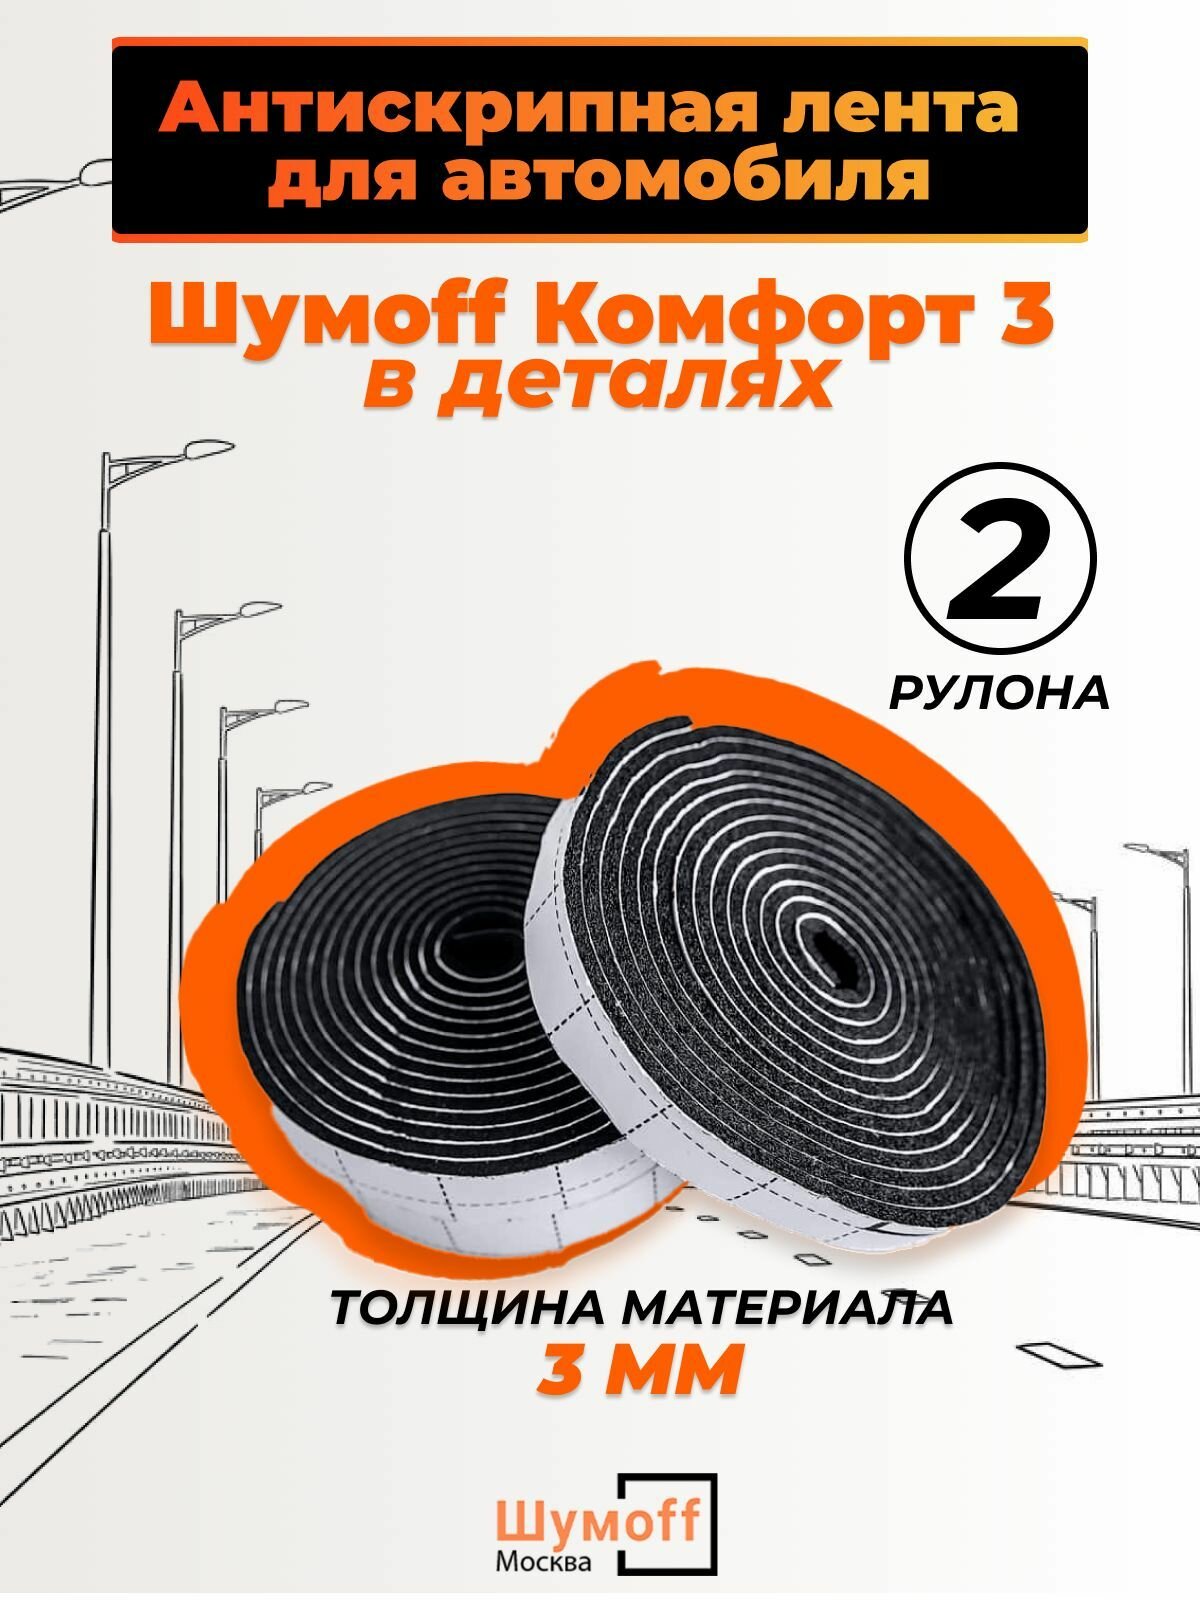 Звукоизоляция автомобиля Комфорт 3 - 15*250мм, уплотнительная самоклеящаяся лента — купить в интернет-магазине по низкой цене на Яндекс Маркете